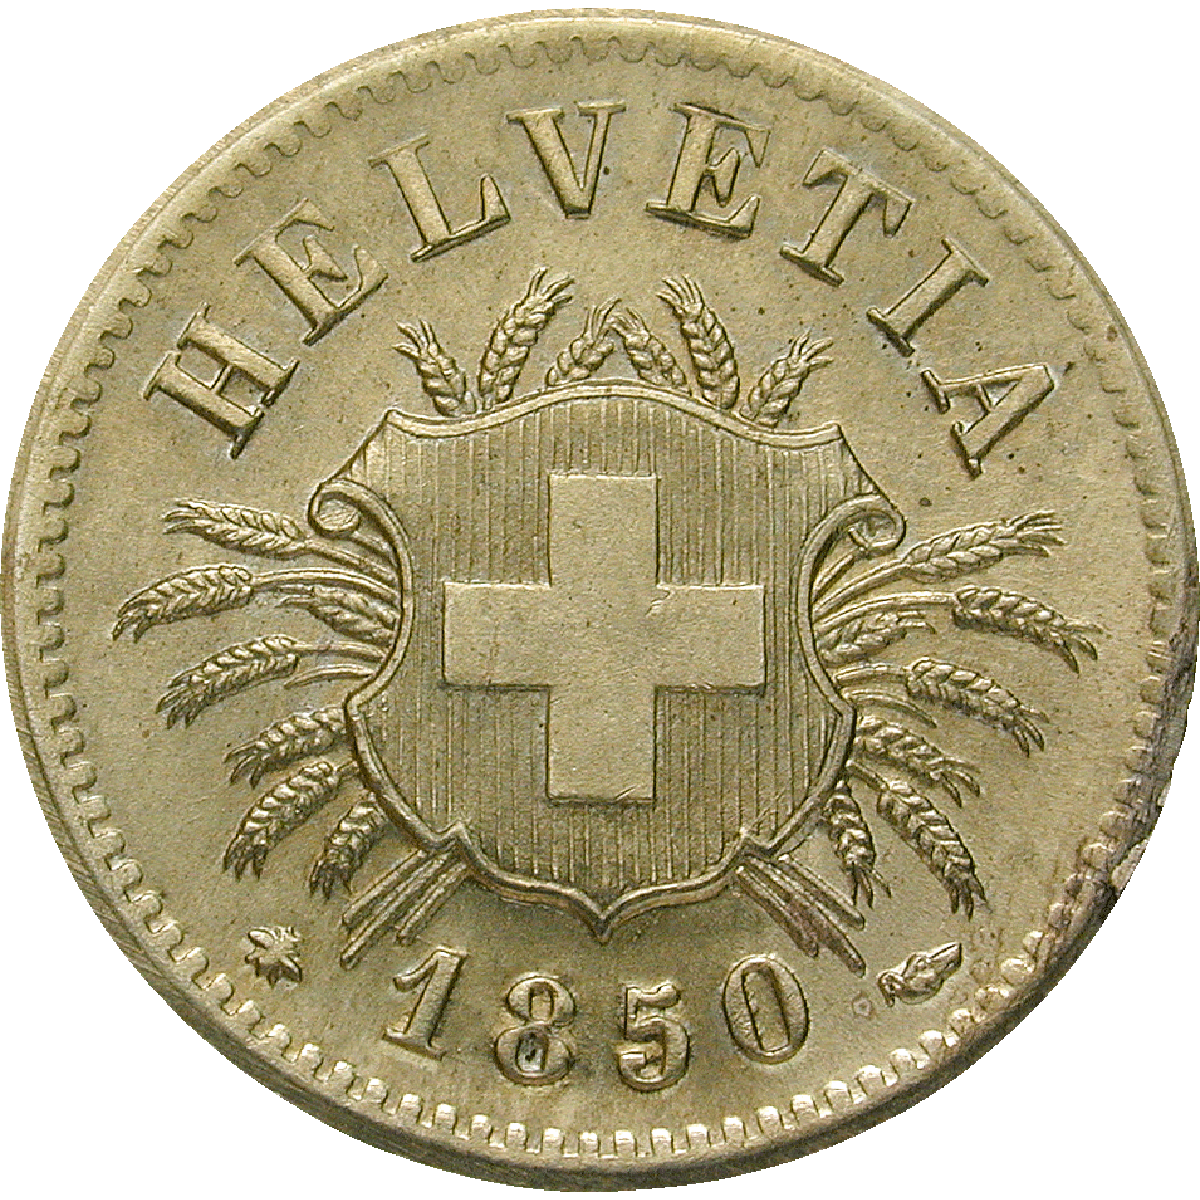 Schweizerische Eidgenossenschaft, 5 Rappen 1850 (obverse)